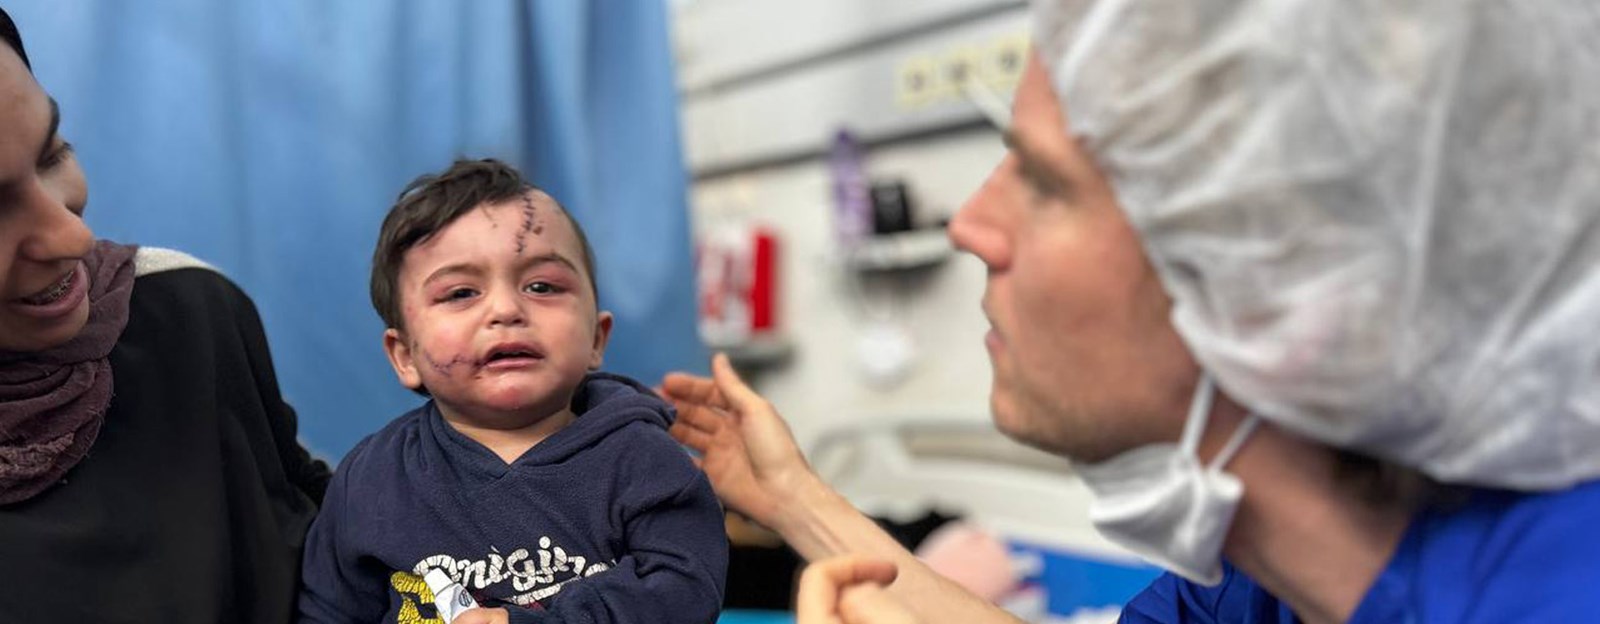 Et barn med sår i ansiktet blir sett på av en lege.